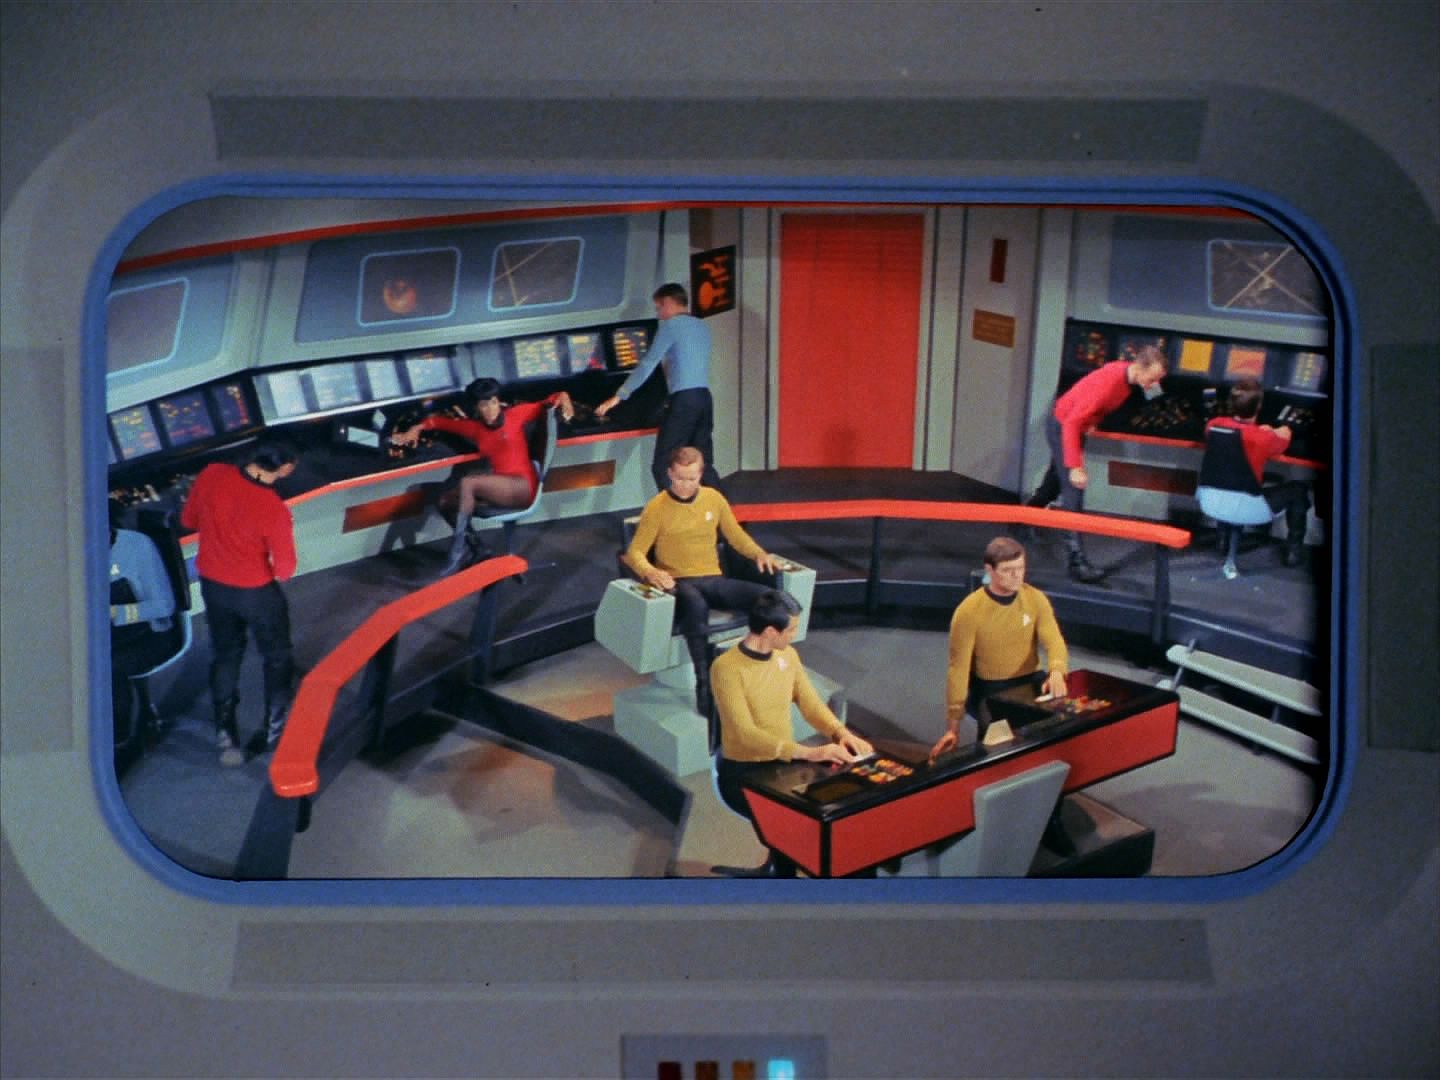 Před soudem svědčili Spock, McCoy a personální důstojník. Všemožně kapitána podpořili, ale záznam počítače nedokázali vyvrátit. Videozáznam z akce je pak zdrcující.